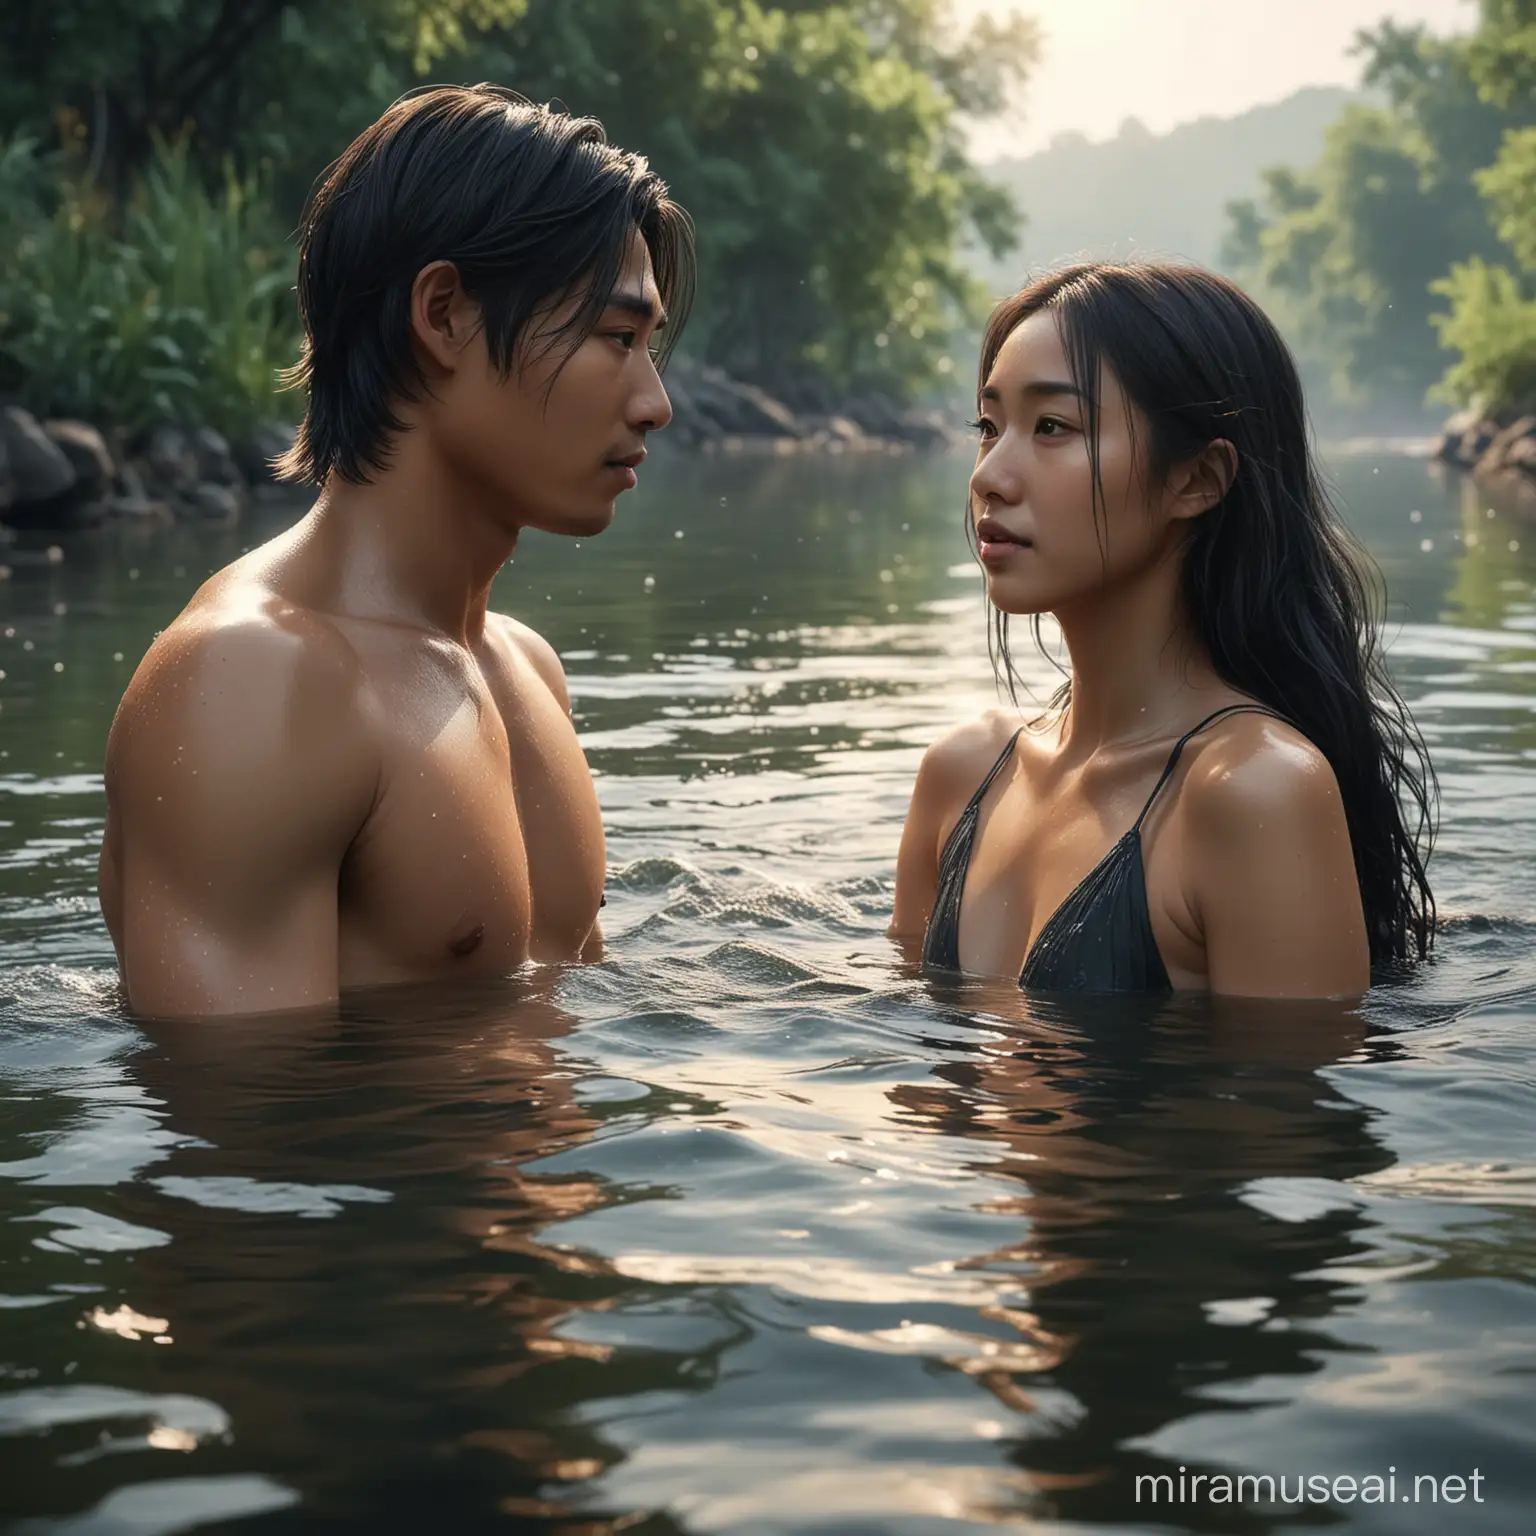 Youthful Asian Duo Enjoying a Serene River Swim